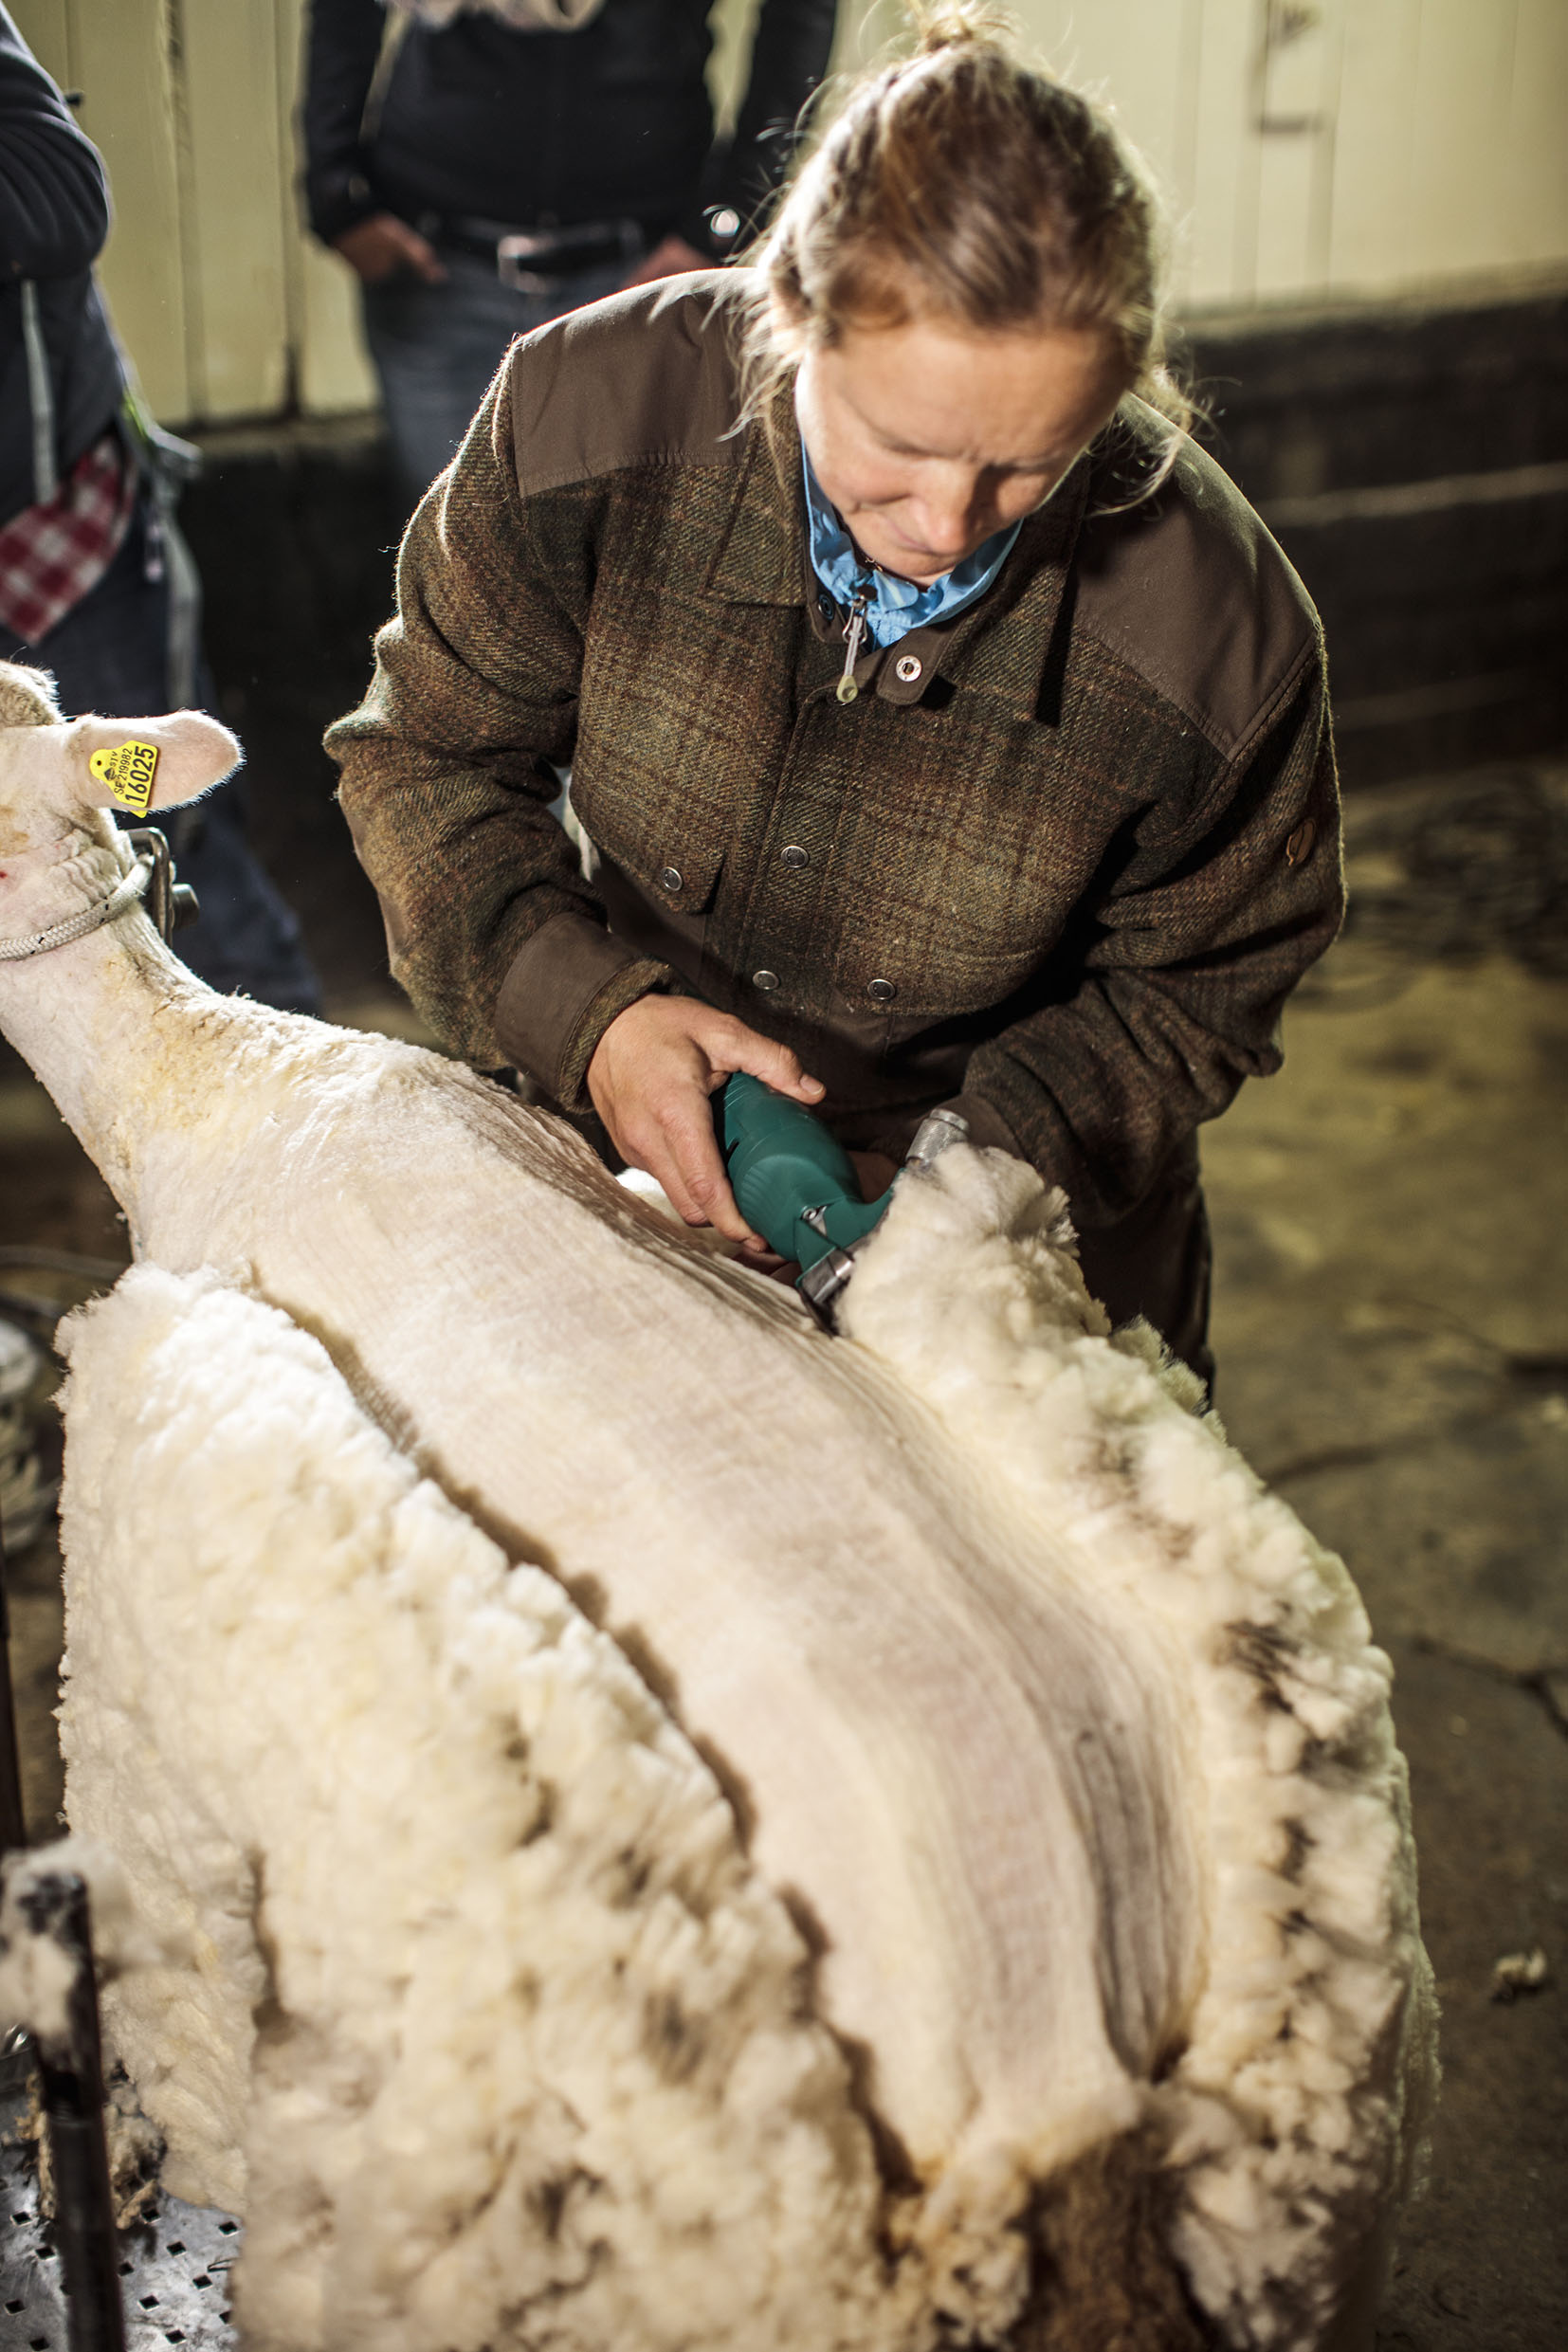 Att klippa får är en konst inte många i Sverige behärskar längre. Brattlandsgårdens får klipps två gånger per år, för att det är bäst för fåren.